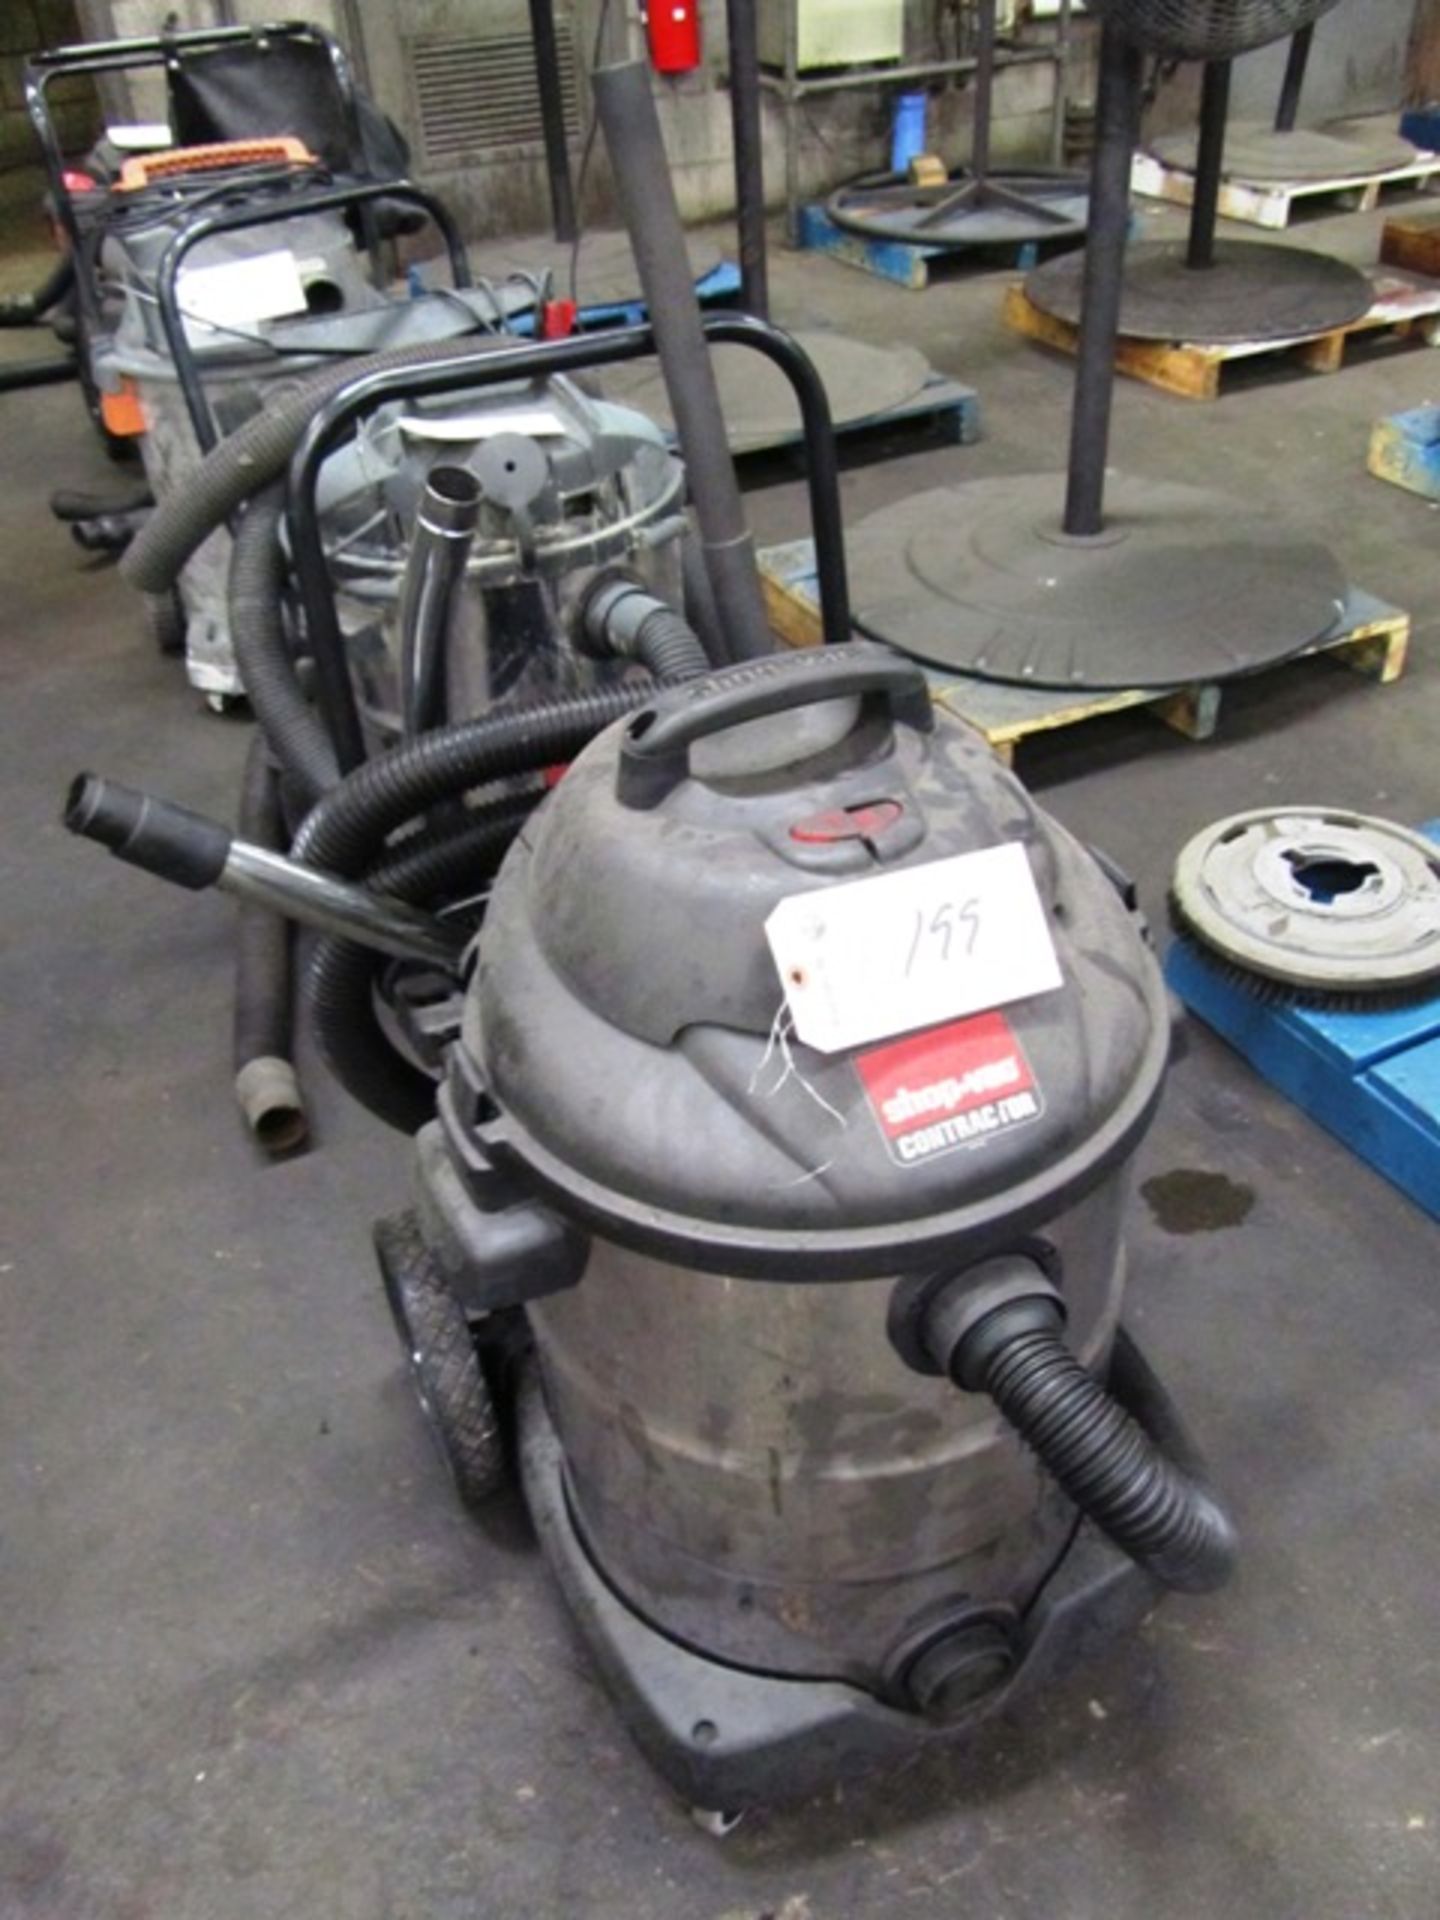 Shop Vac Portable Vacuum